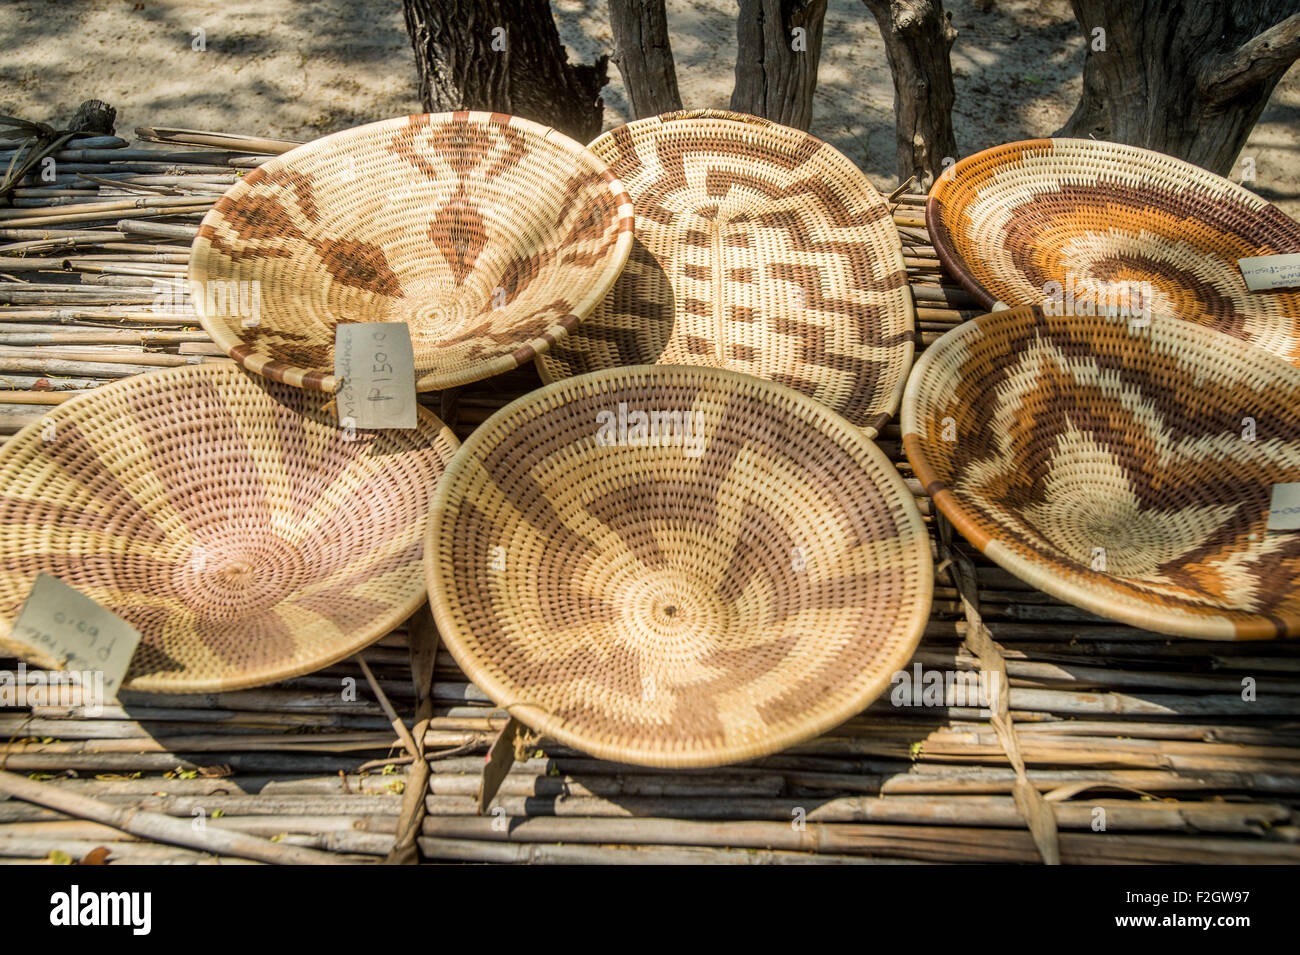 Sexaxa Dorf traditionelle afrikanische Wicker Schalen zum Verkauf in Botswana, Afrika Stockfoto